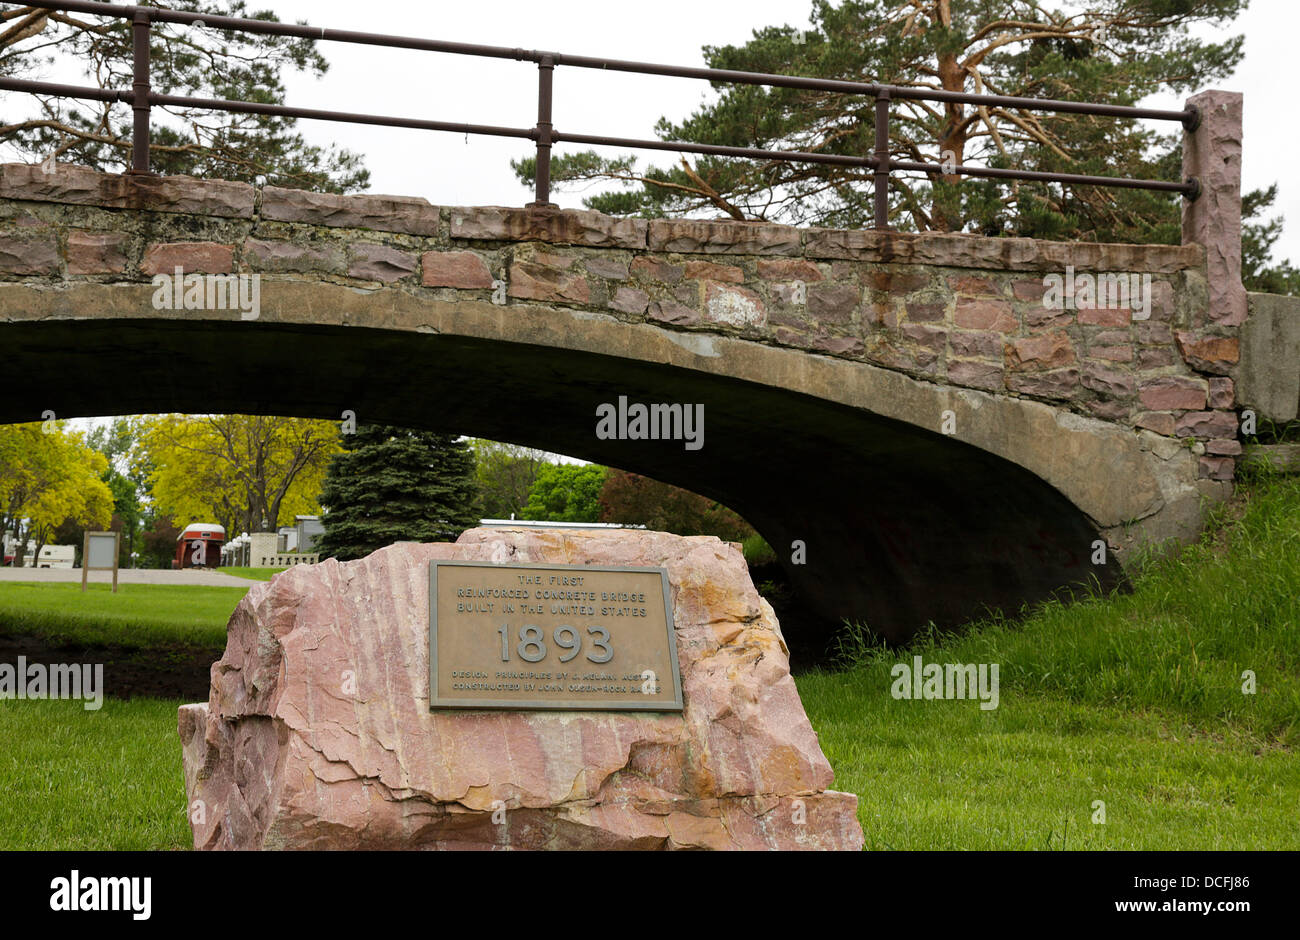 6. Juni 2013 - Rock Rapids, Iowa, USA - die erste Stahlbeton-Brücke, errichtet in den Vereinigten Staaten in Emma Sater Park gelegen. Erbaut im Jahre 1893 von tschechischen geboren Frederick von Emperger, diese Brücke übergreifenden Dry Creek südlich von Rock Stromschnellen bis 1964 als die Fahrbahn war erweitern und die Brücke in den Park verlegt. Das Melan System war innovativ in der Verwendung von Beton und Stahl und von Joseph Melan, österreichischer Ingenieur erfunden. Der Bogen unterstützen die 30 ft-Spanne ist 6 ft 6 Zoll an die Krone und wird verstärkt durch die Eisenbahnschienen. Lyon County, Iowa, bezahlt $830,00 für den Bau einschließlich th Stockfoto